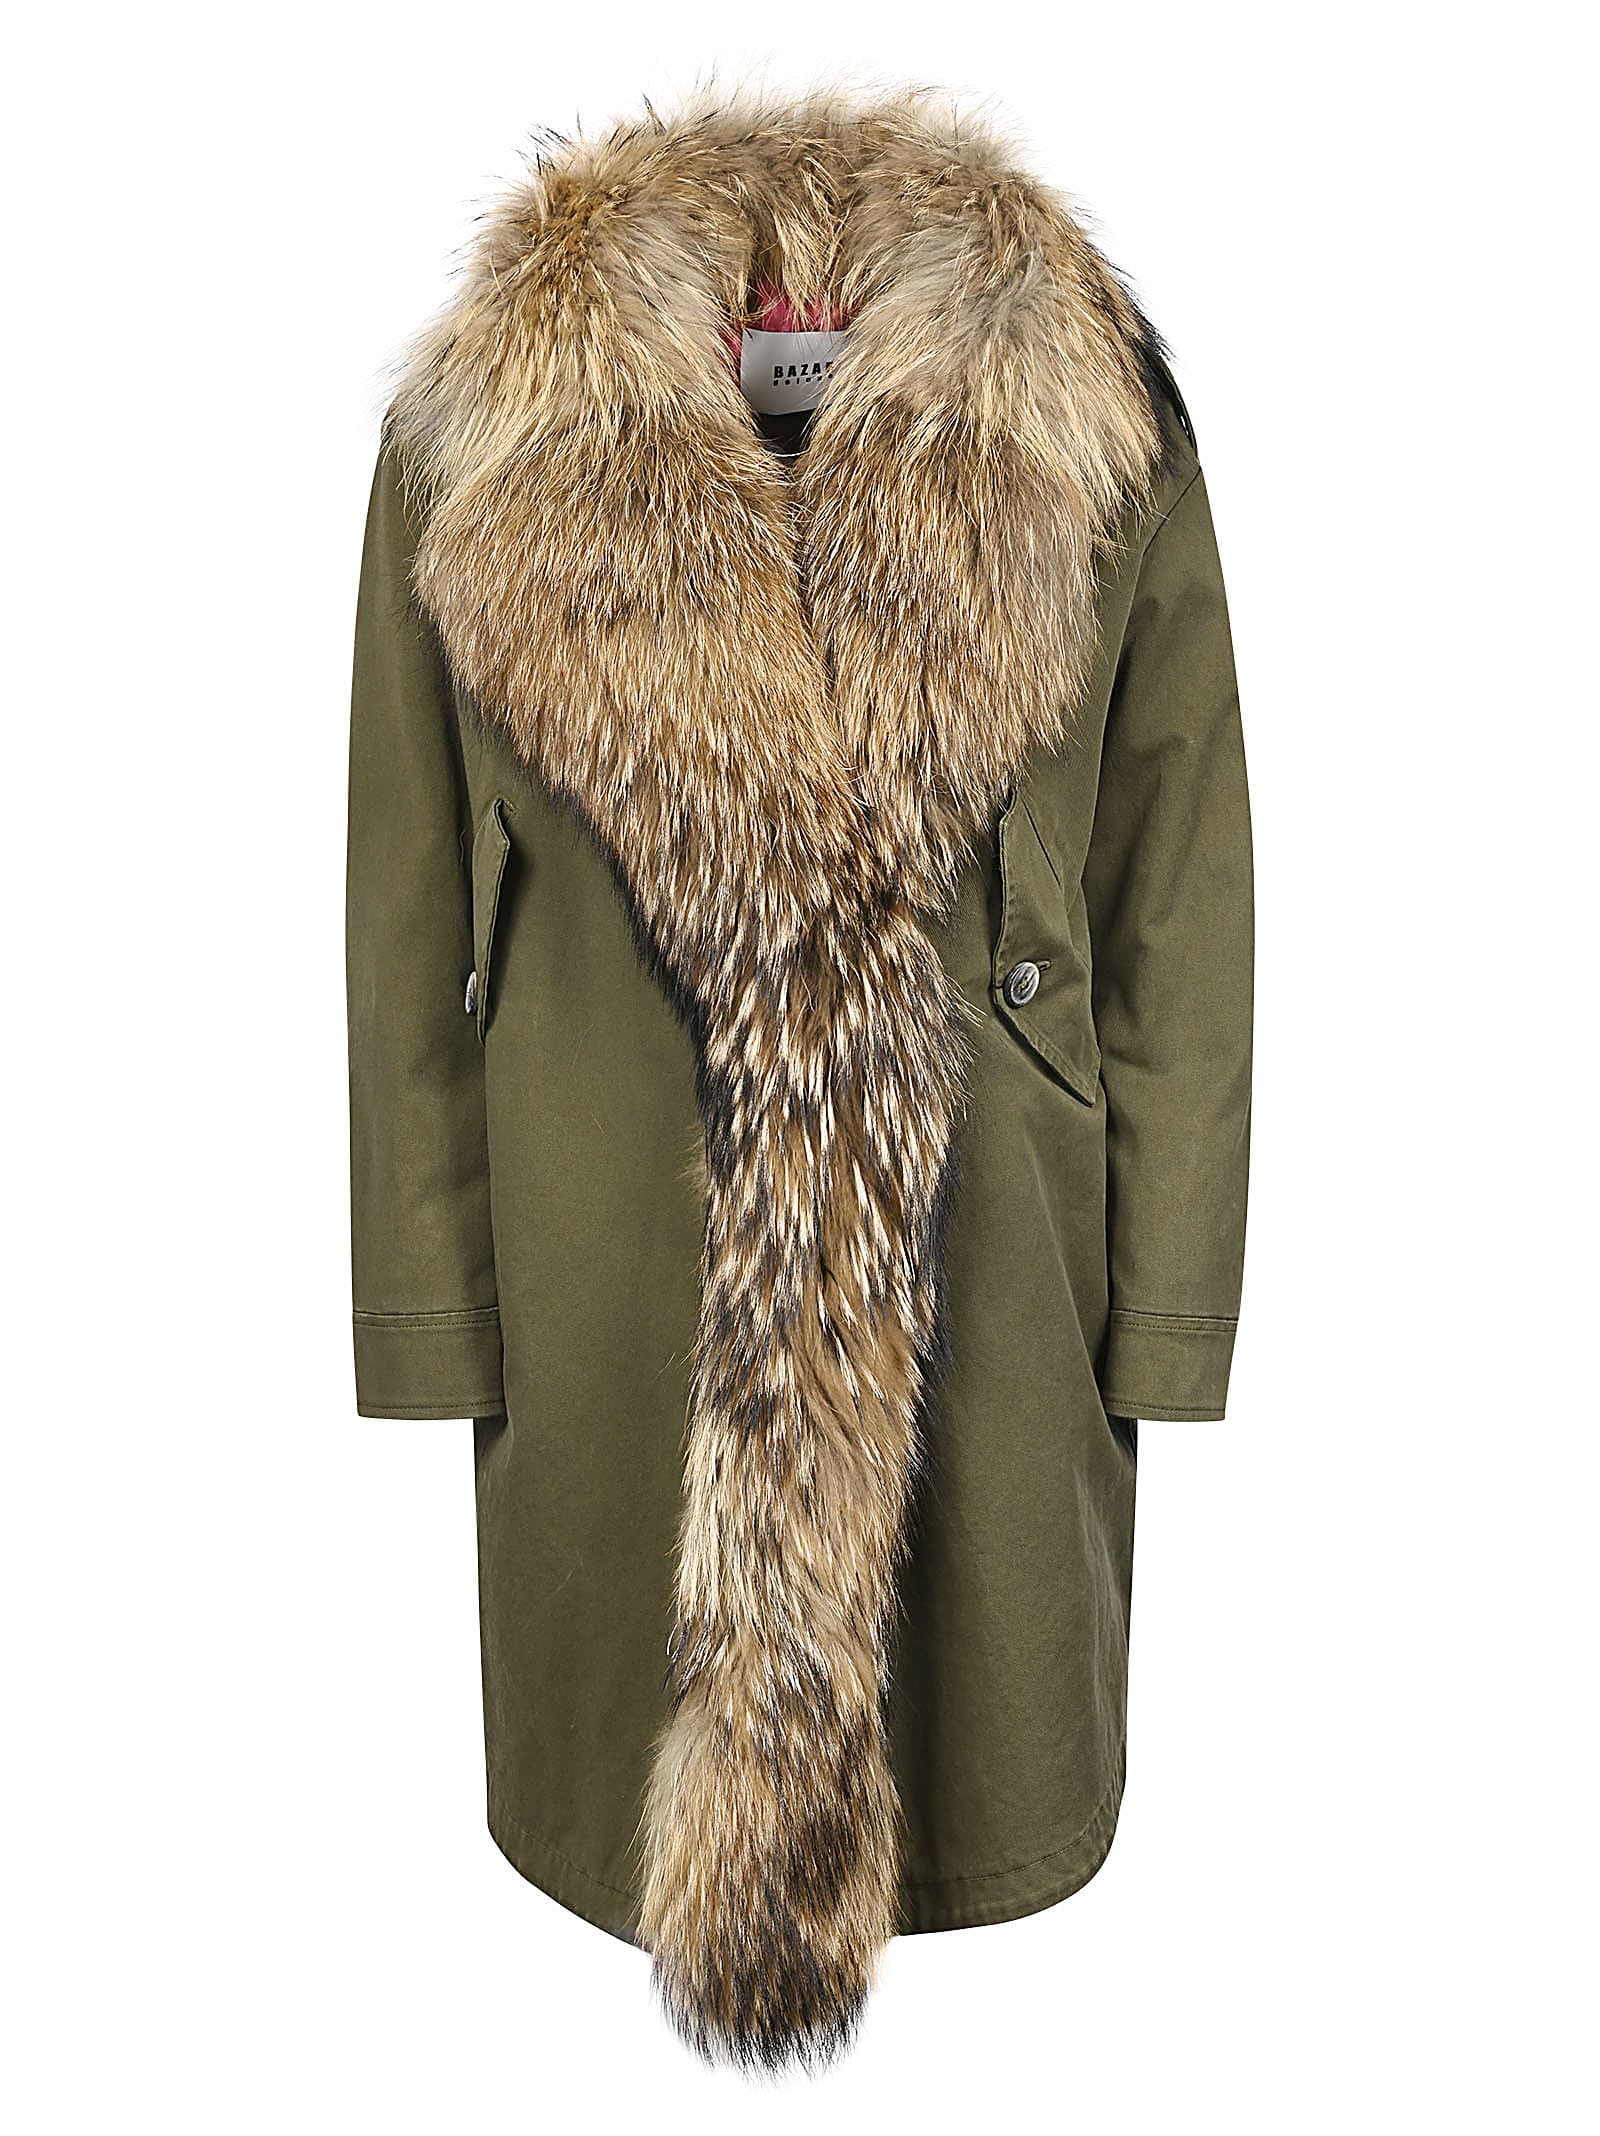 Bazar Deluxe Furred Coat